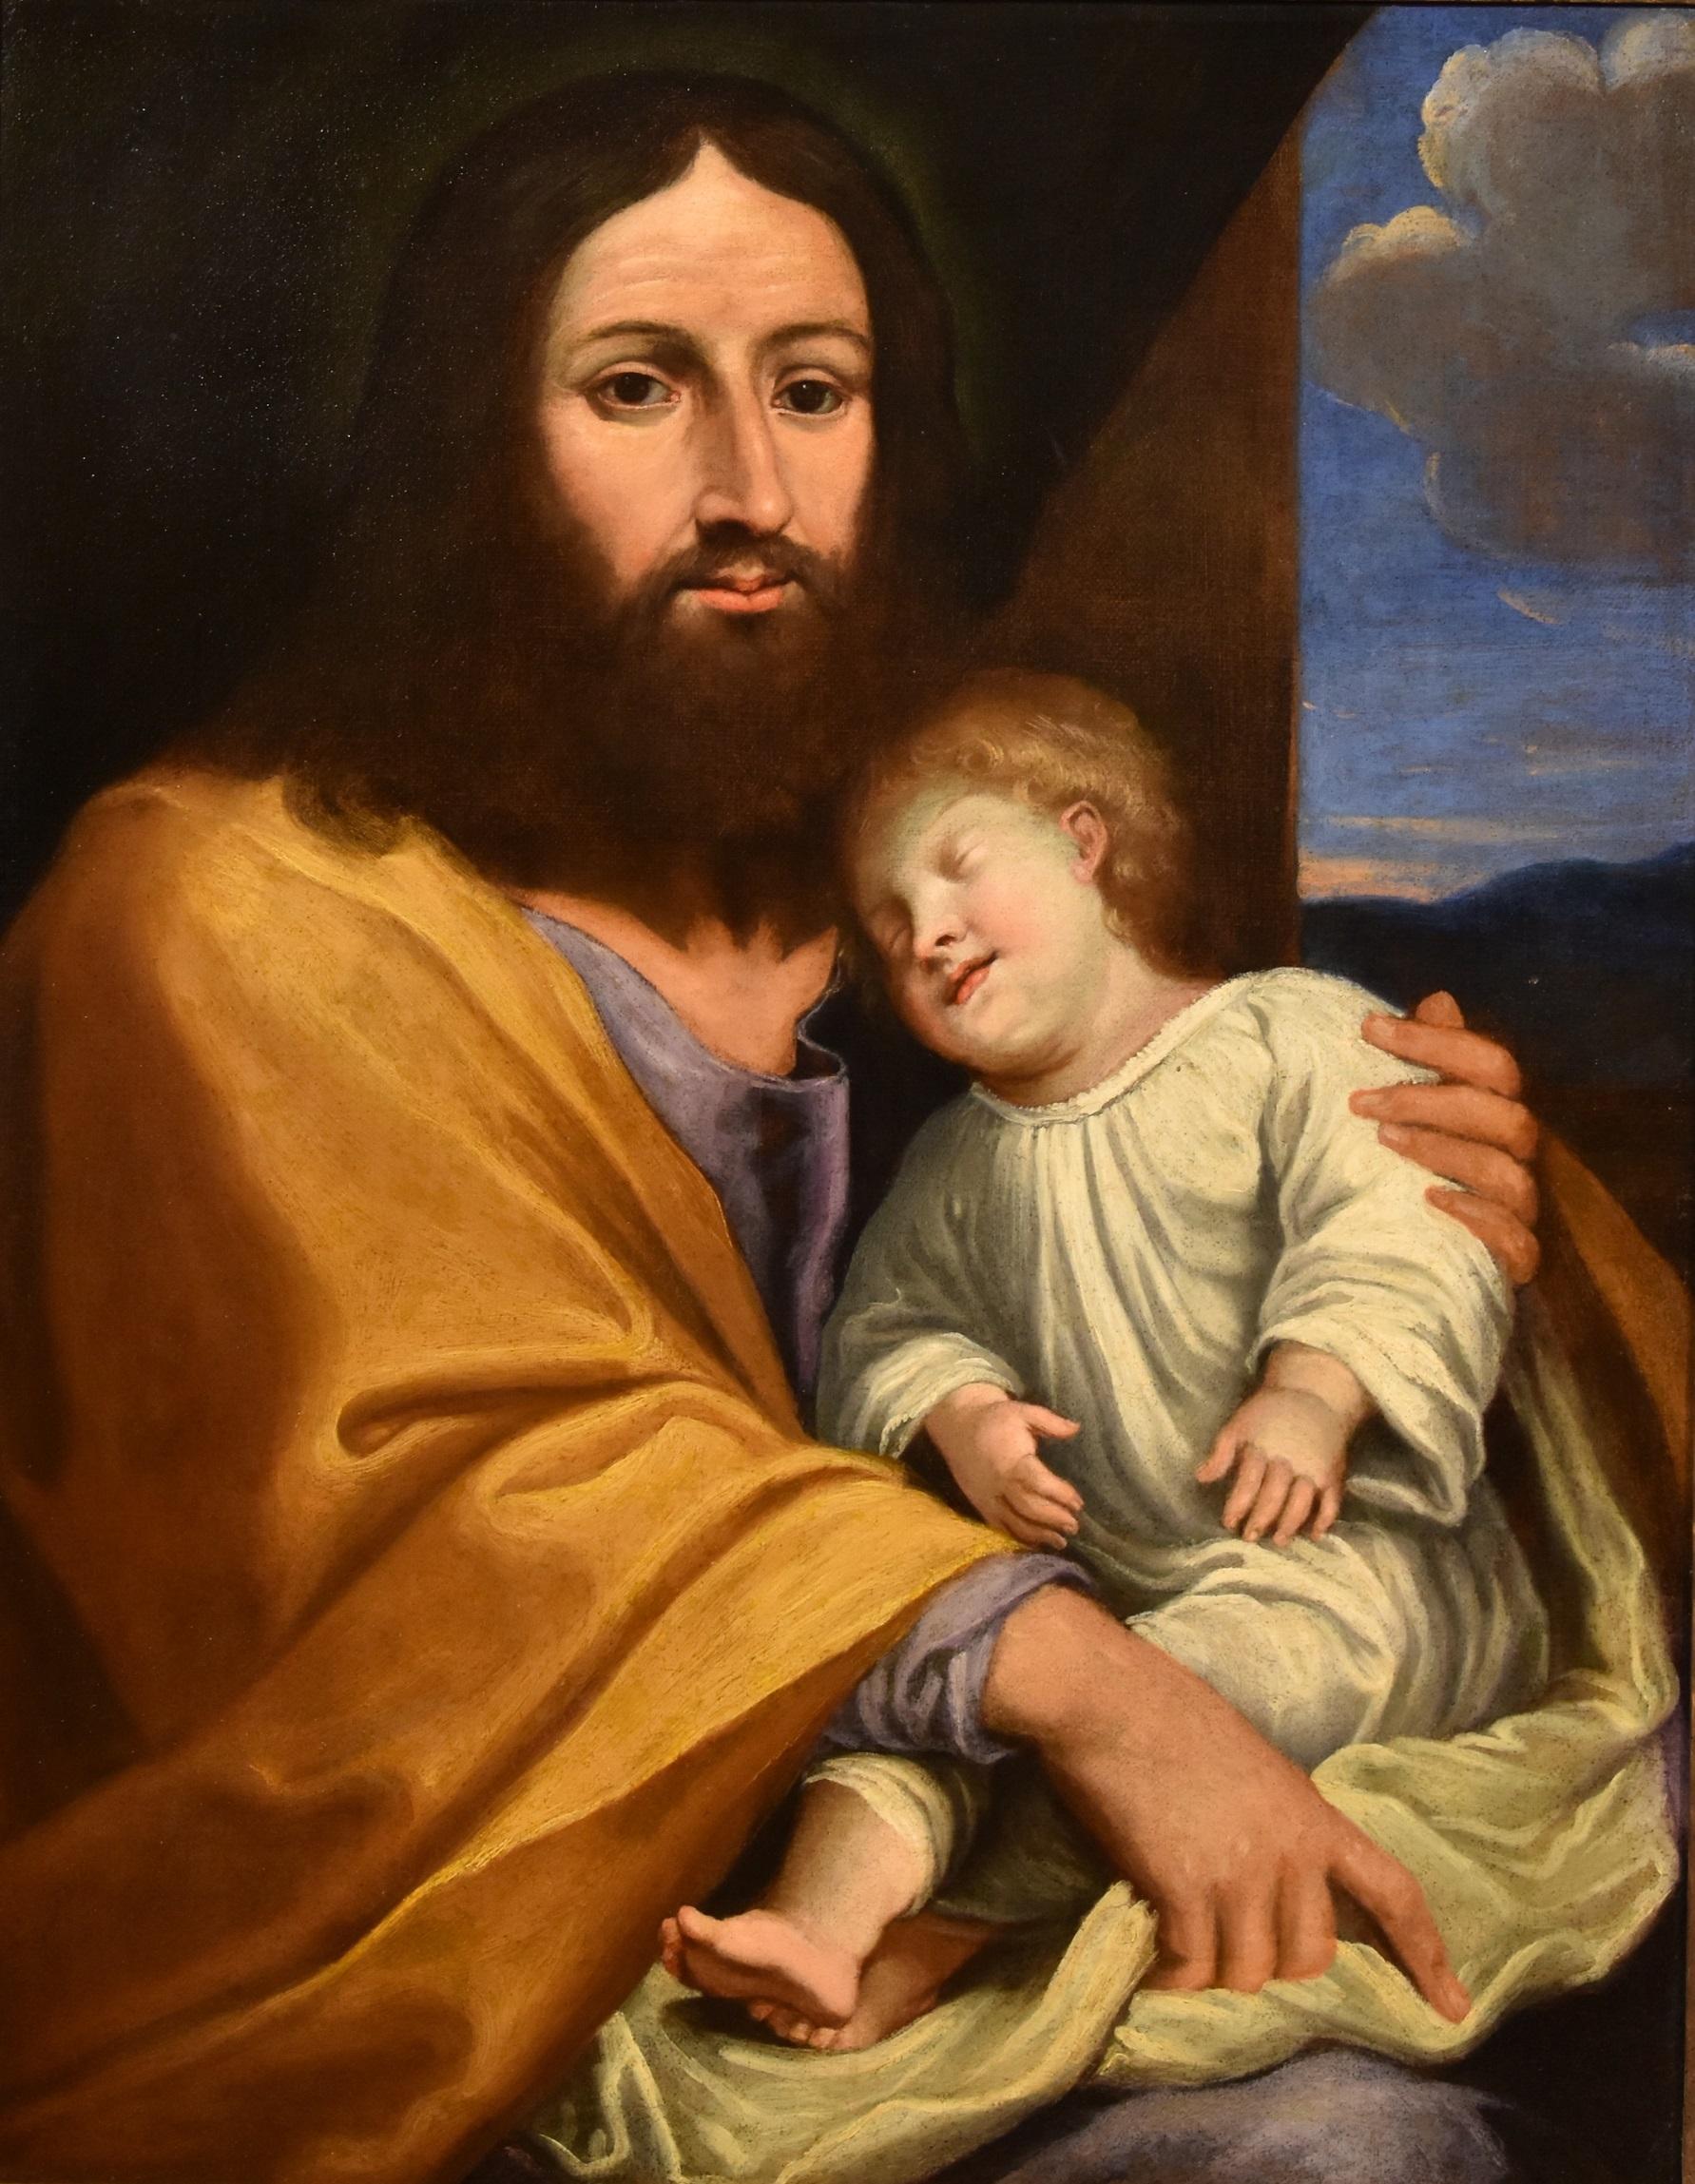 Jesus Sohn Salvi, Gemälde Öl auf Leinwand, alter Meister, 17. Jahrhundert, Italienisch, religiös – Painting von Giovan Battista Salvi known as 